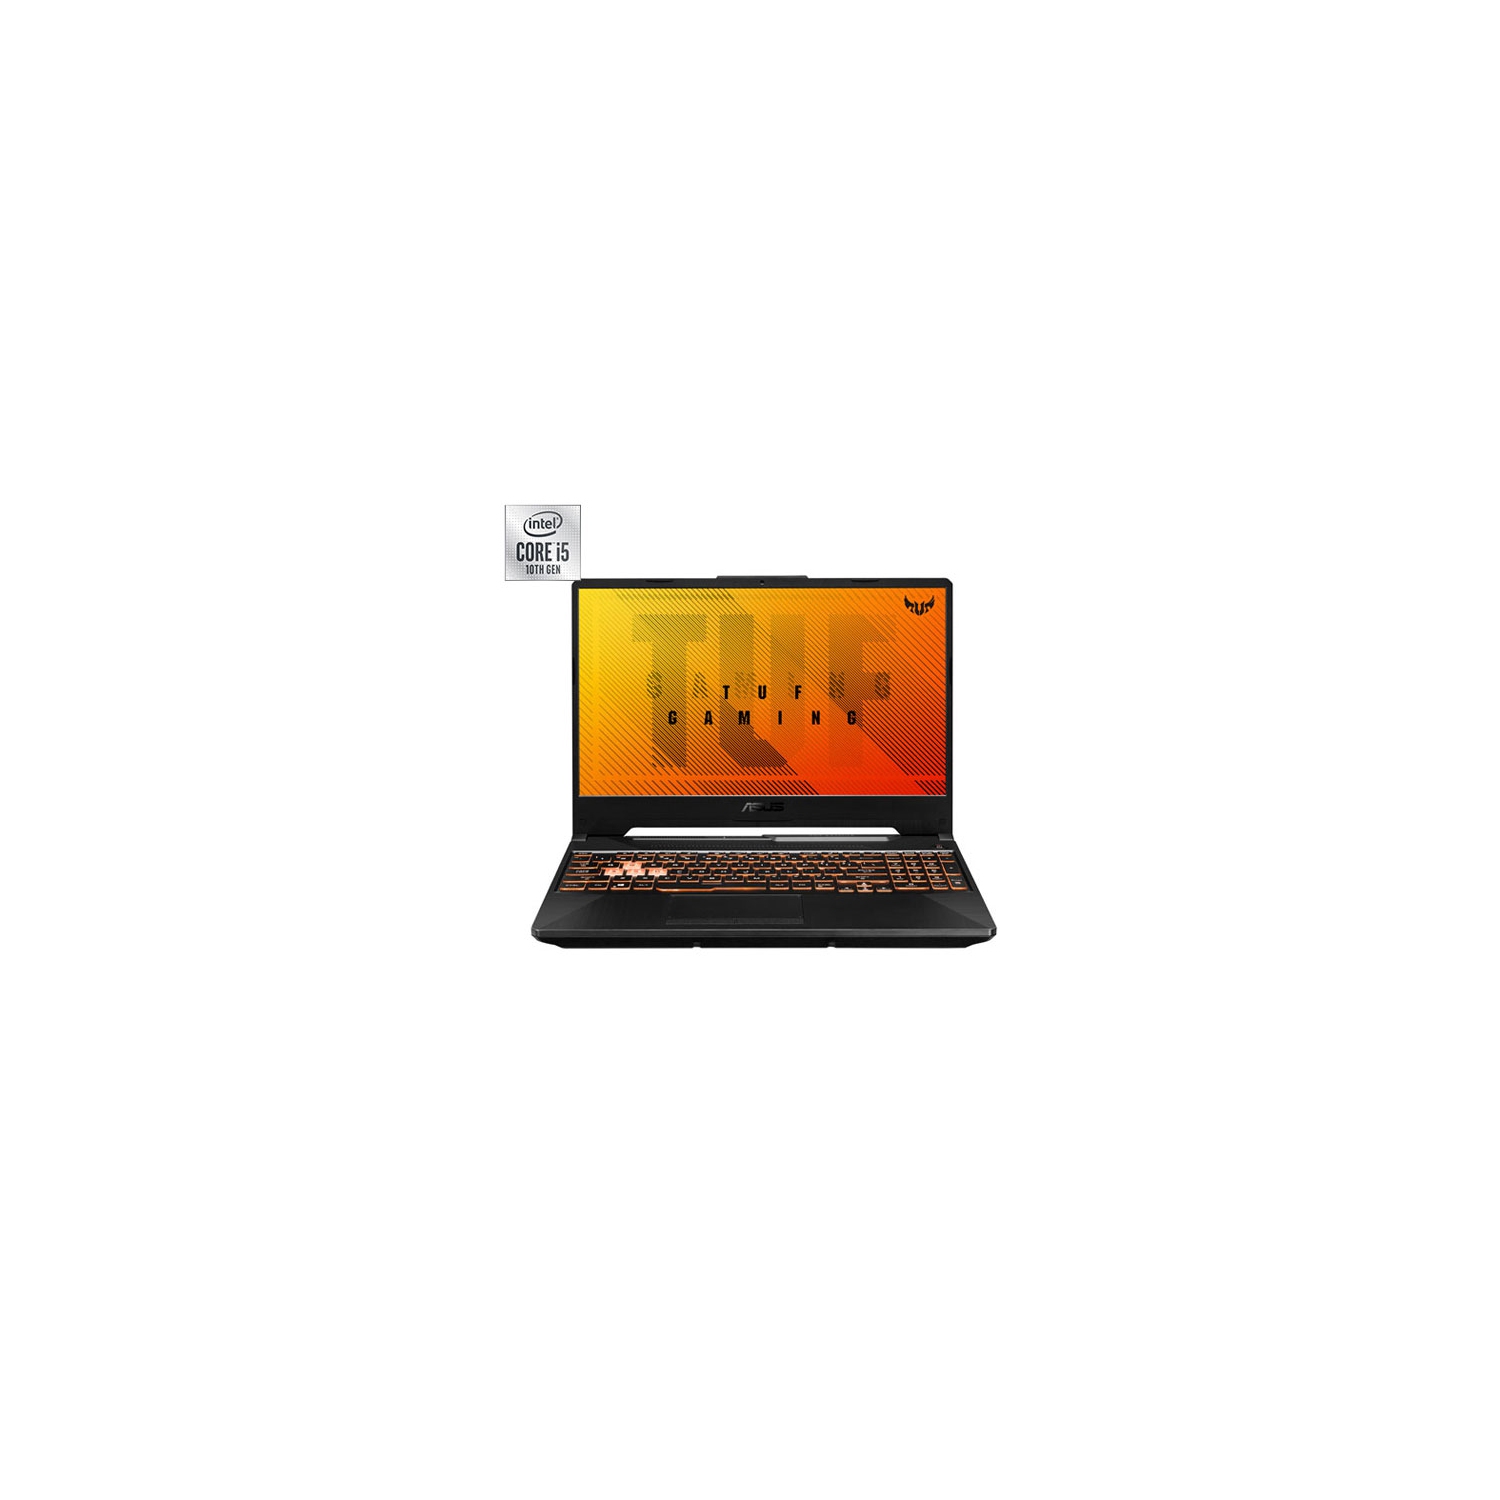 Open Box - ASUS TUF Gaming F15 15.6" Gaming Laptop (Intel Core i5-10300H/512GB SSD/8GB RAM/GeForce GTX 1650)